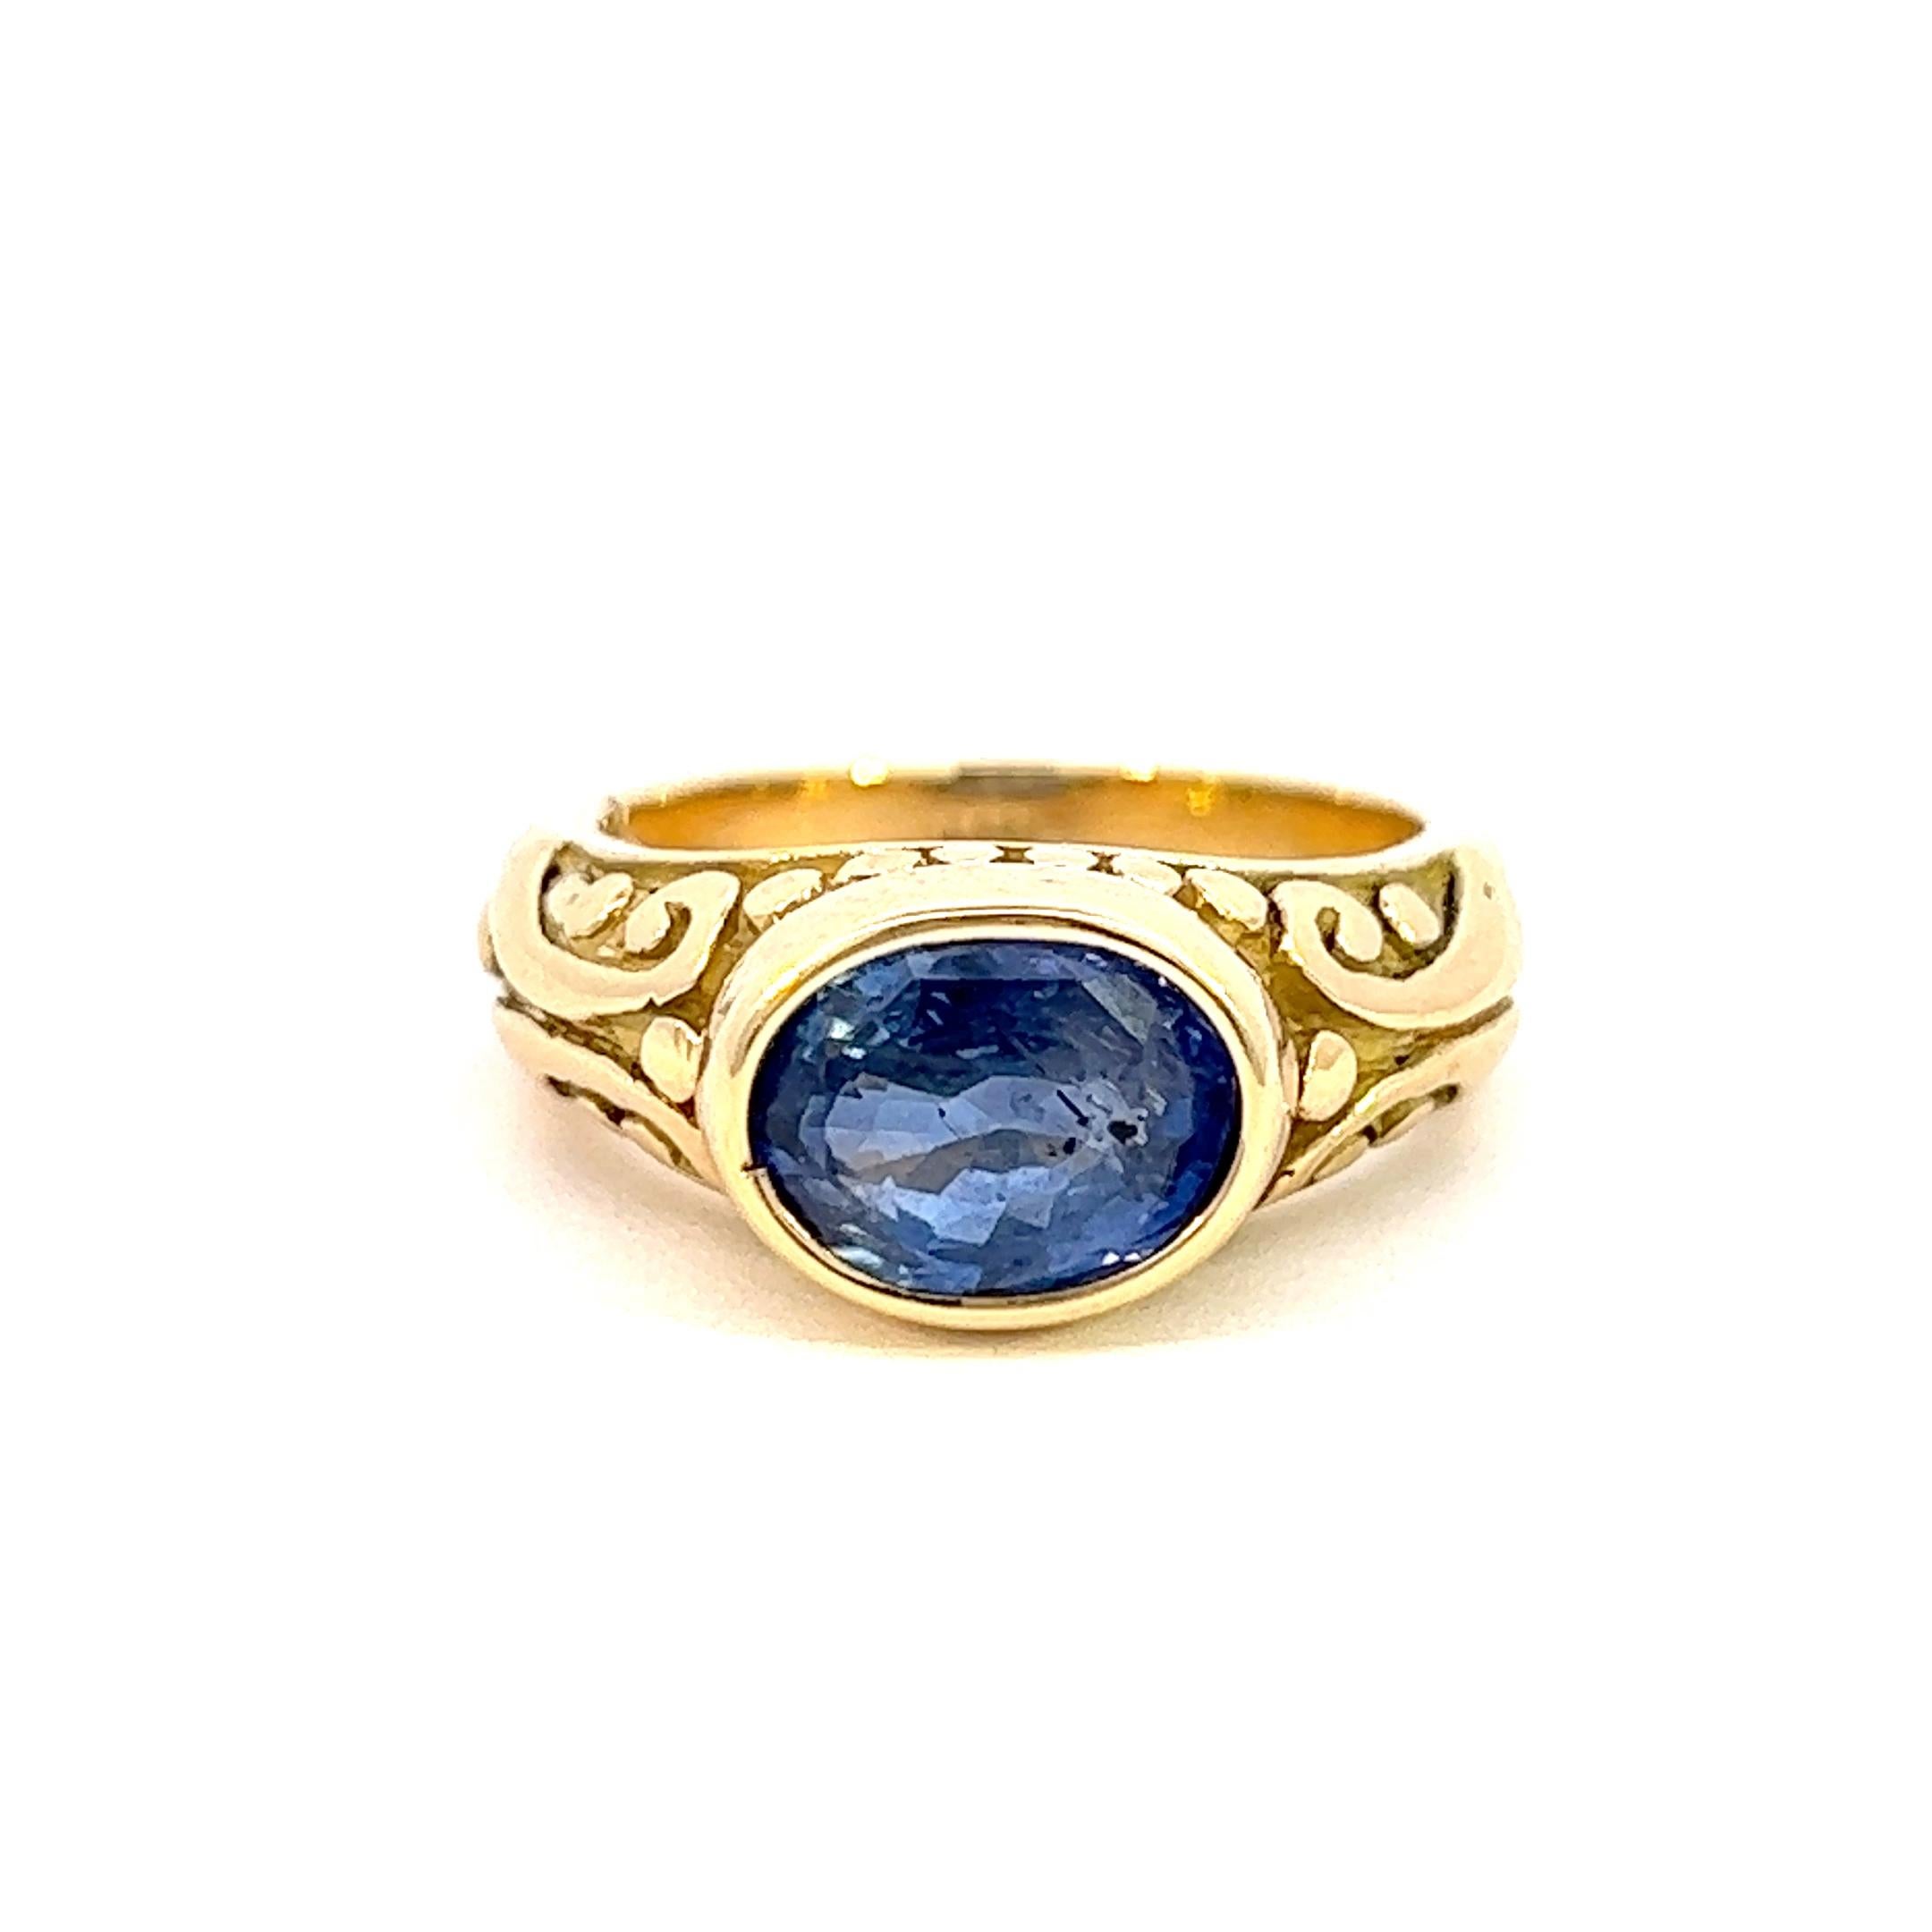 Dieser exquisite Ring aus 18 Karat Gold, der in einer Mülltonne in New York City gefunden wurde, wurde mit einem atemberaubenden blauen Saphir aus Jaipur, Indien, kombiniert. Ein wahrhaft einzigartiges Stück, das in seiner Ästhetik sowohl modern als